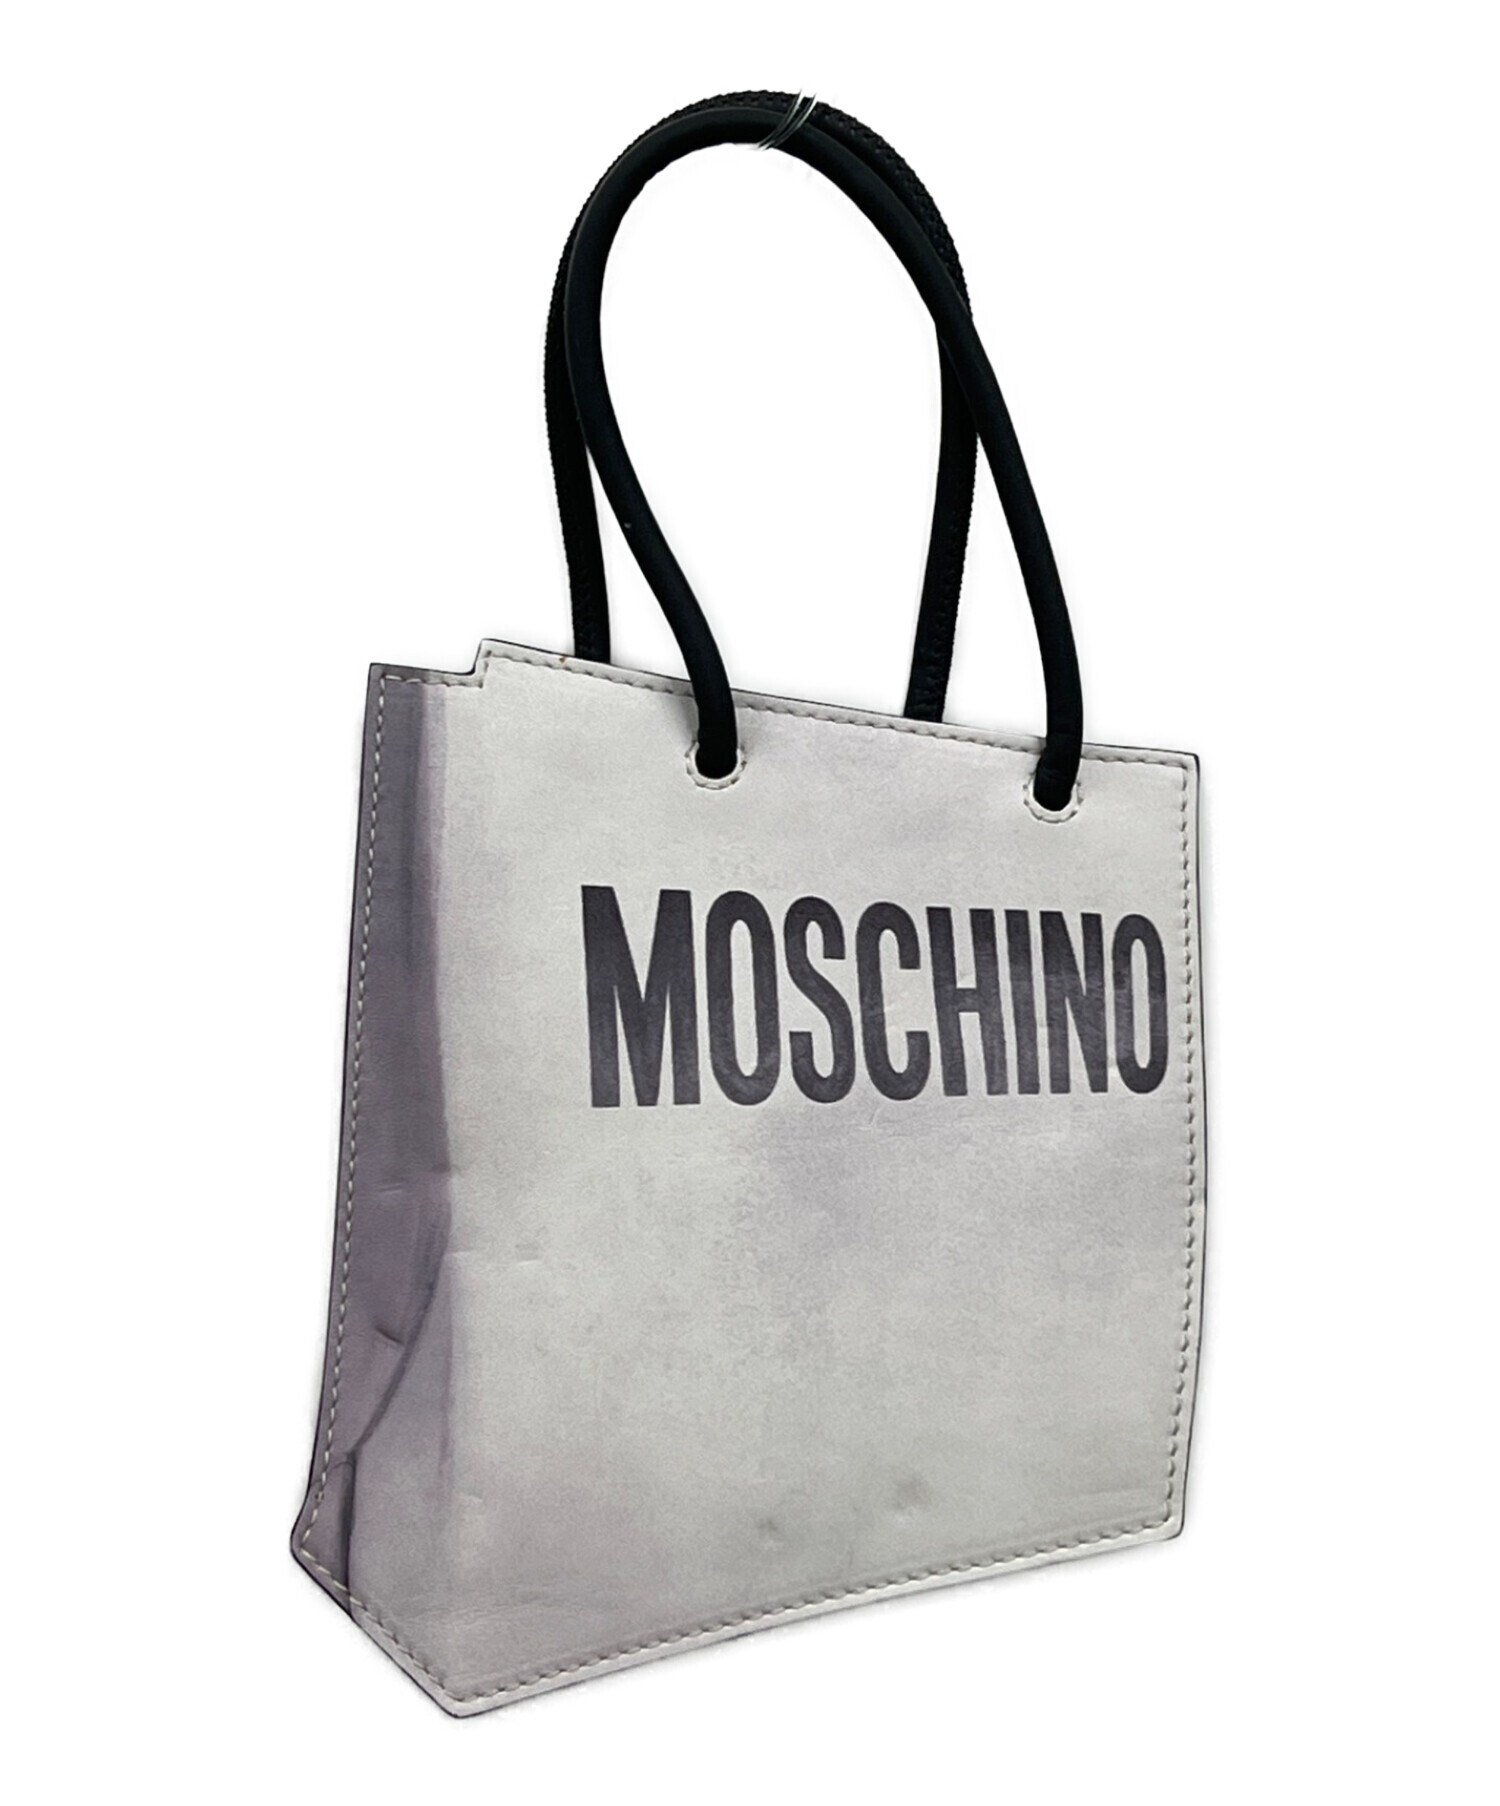 MOSCHINO/モスキーノ ハンドバッグ